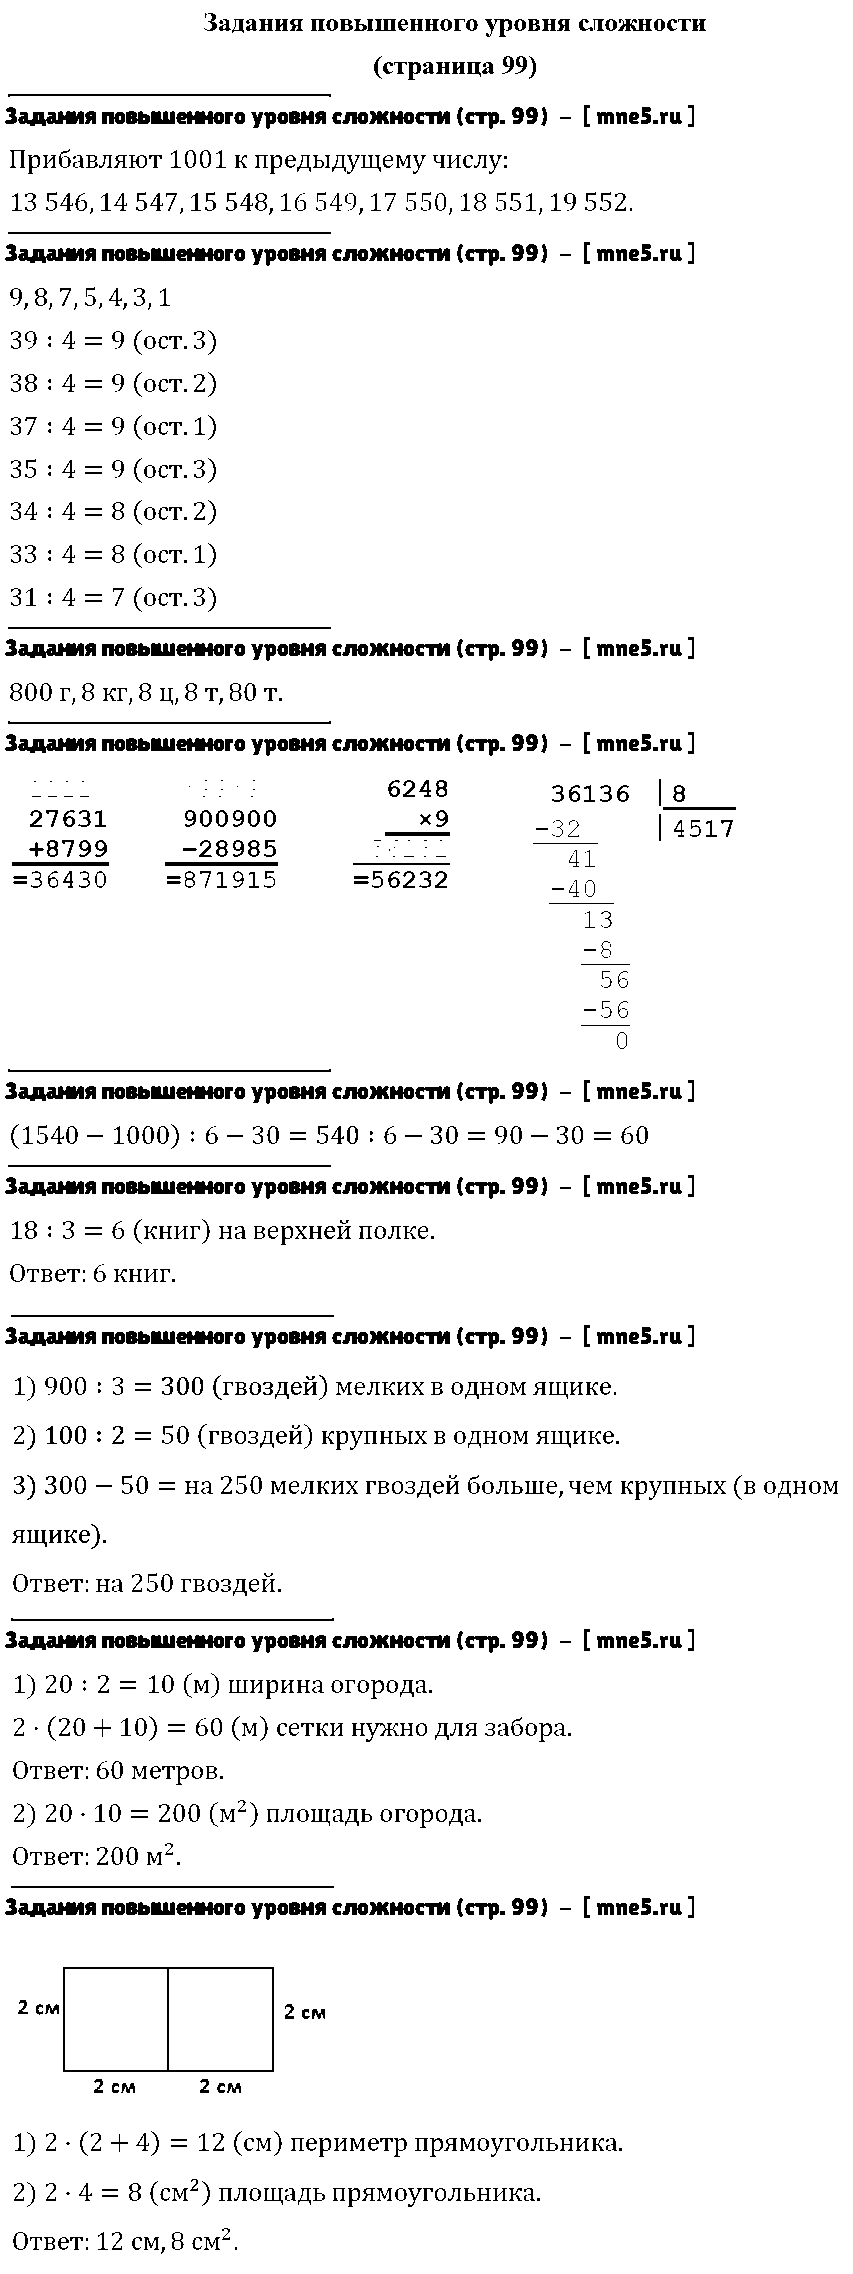 ГДЗ Математика 4 класс - Задания повышенного уровня сложности (стр. 99)